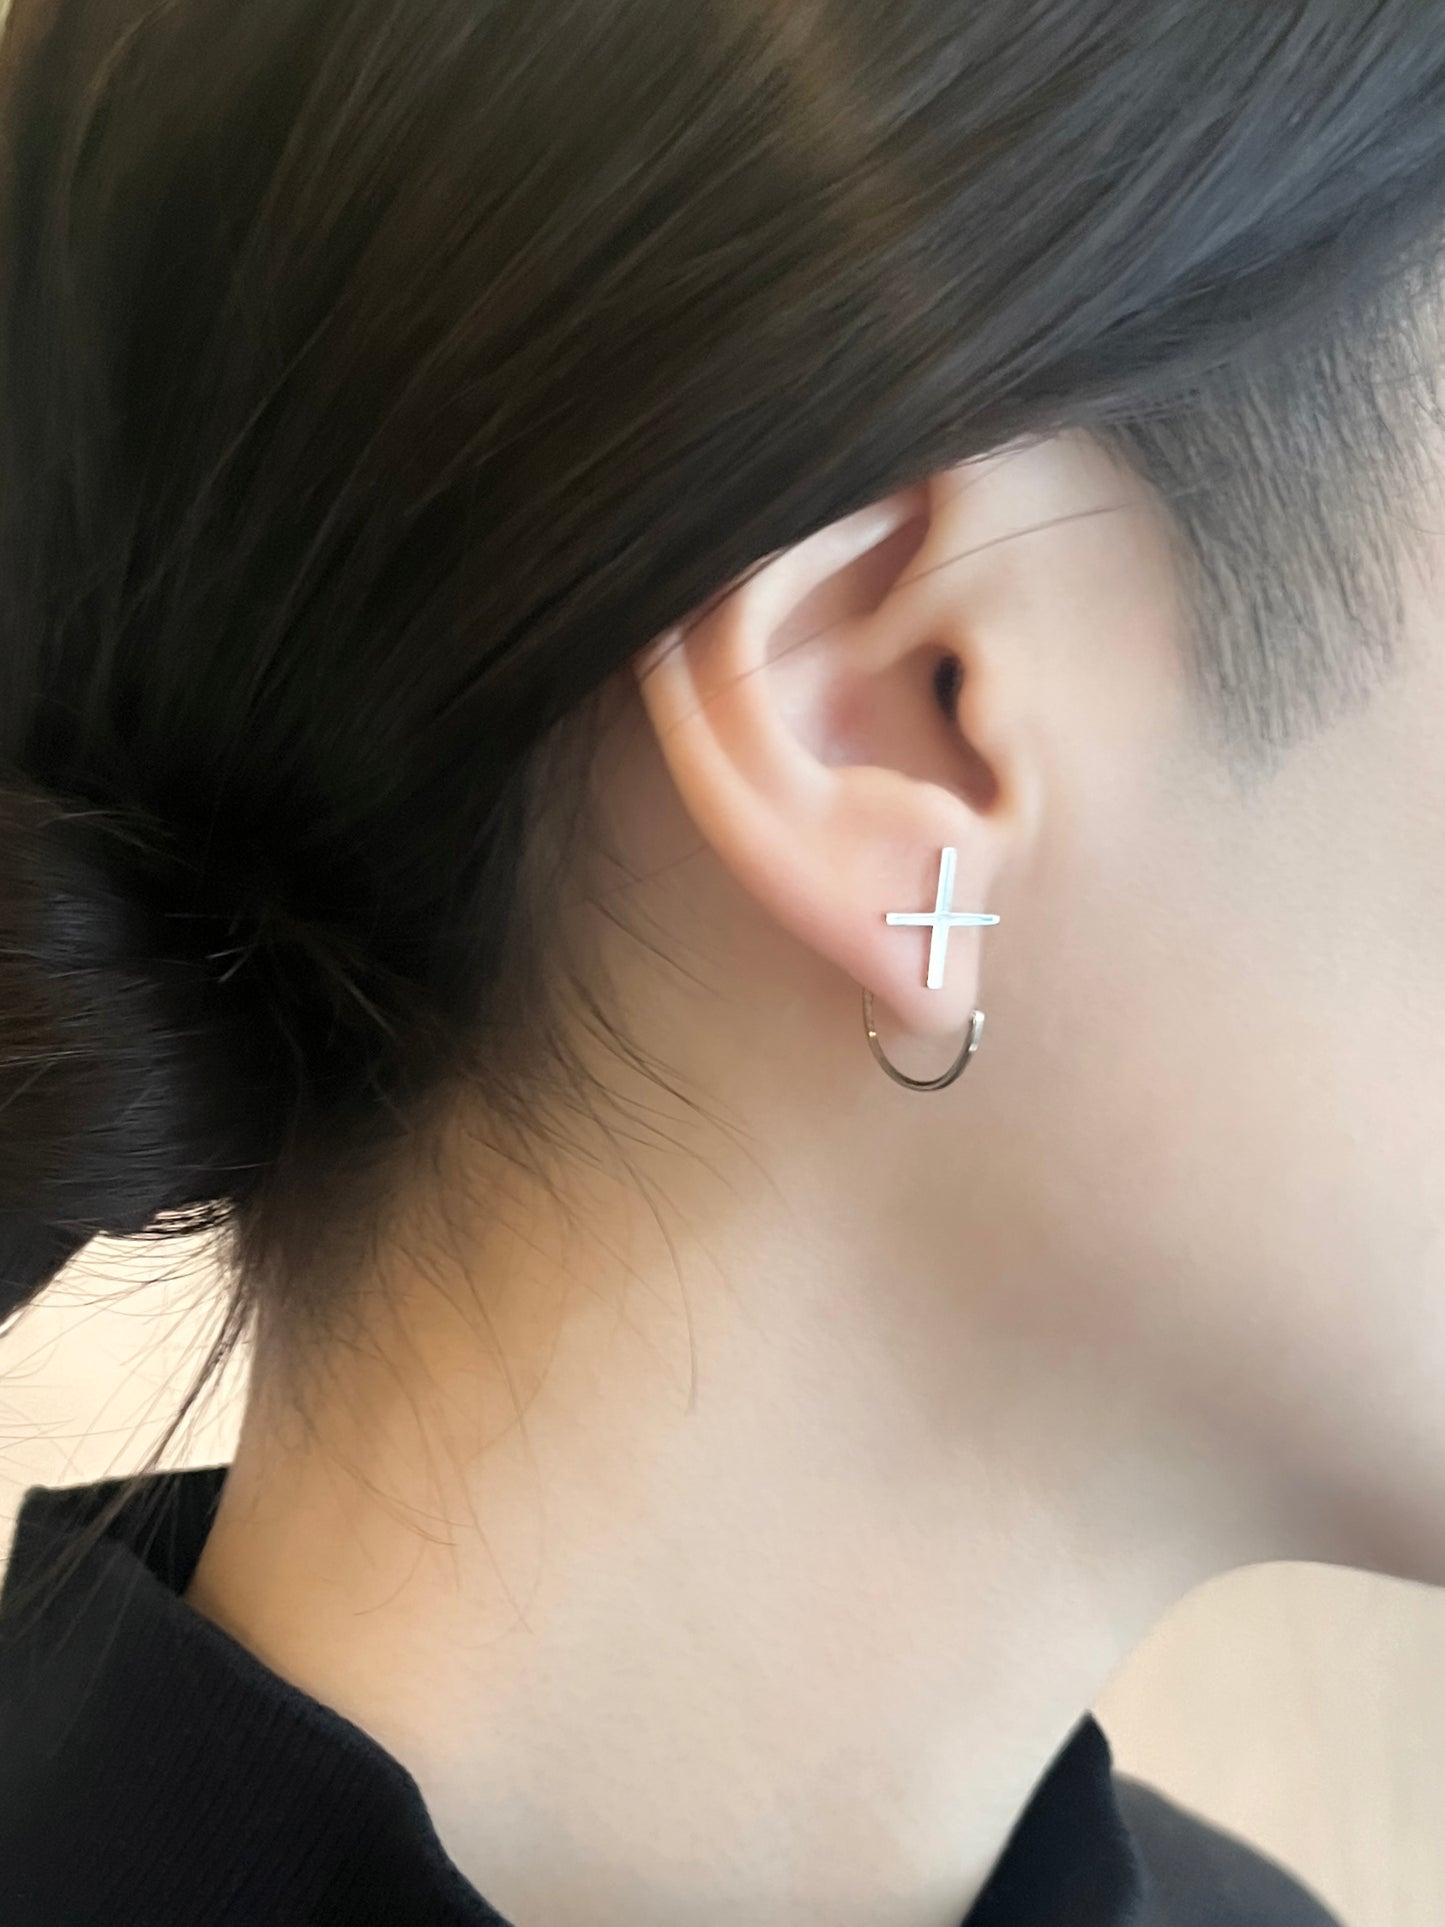 cross | クロス | Pierced earrings | Sterling Silver |  Large